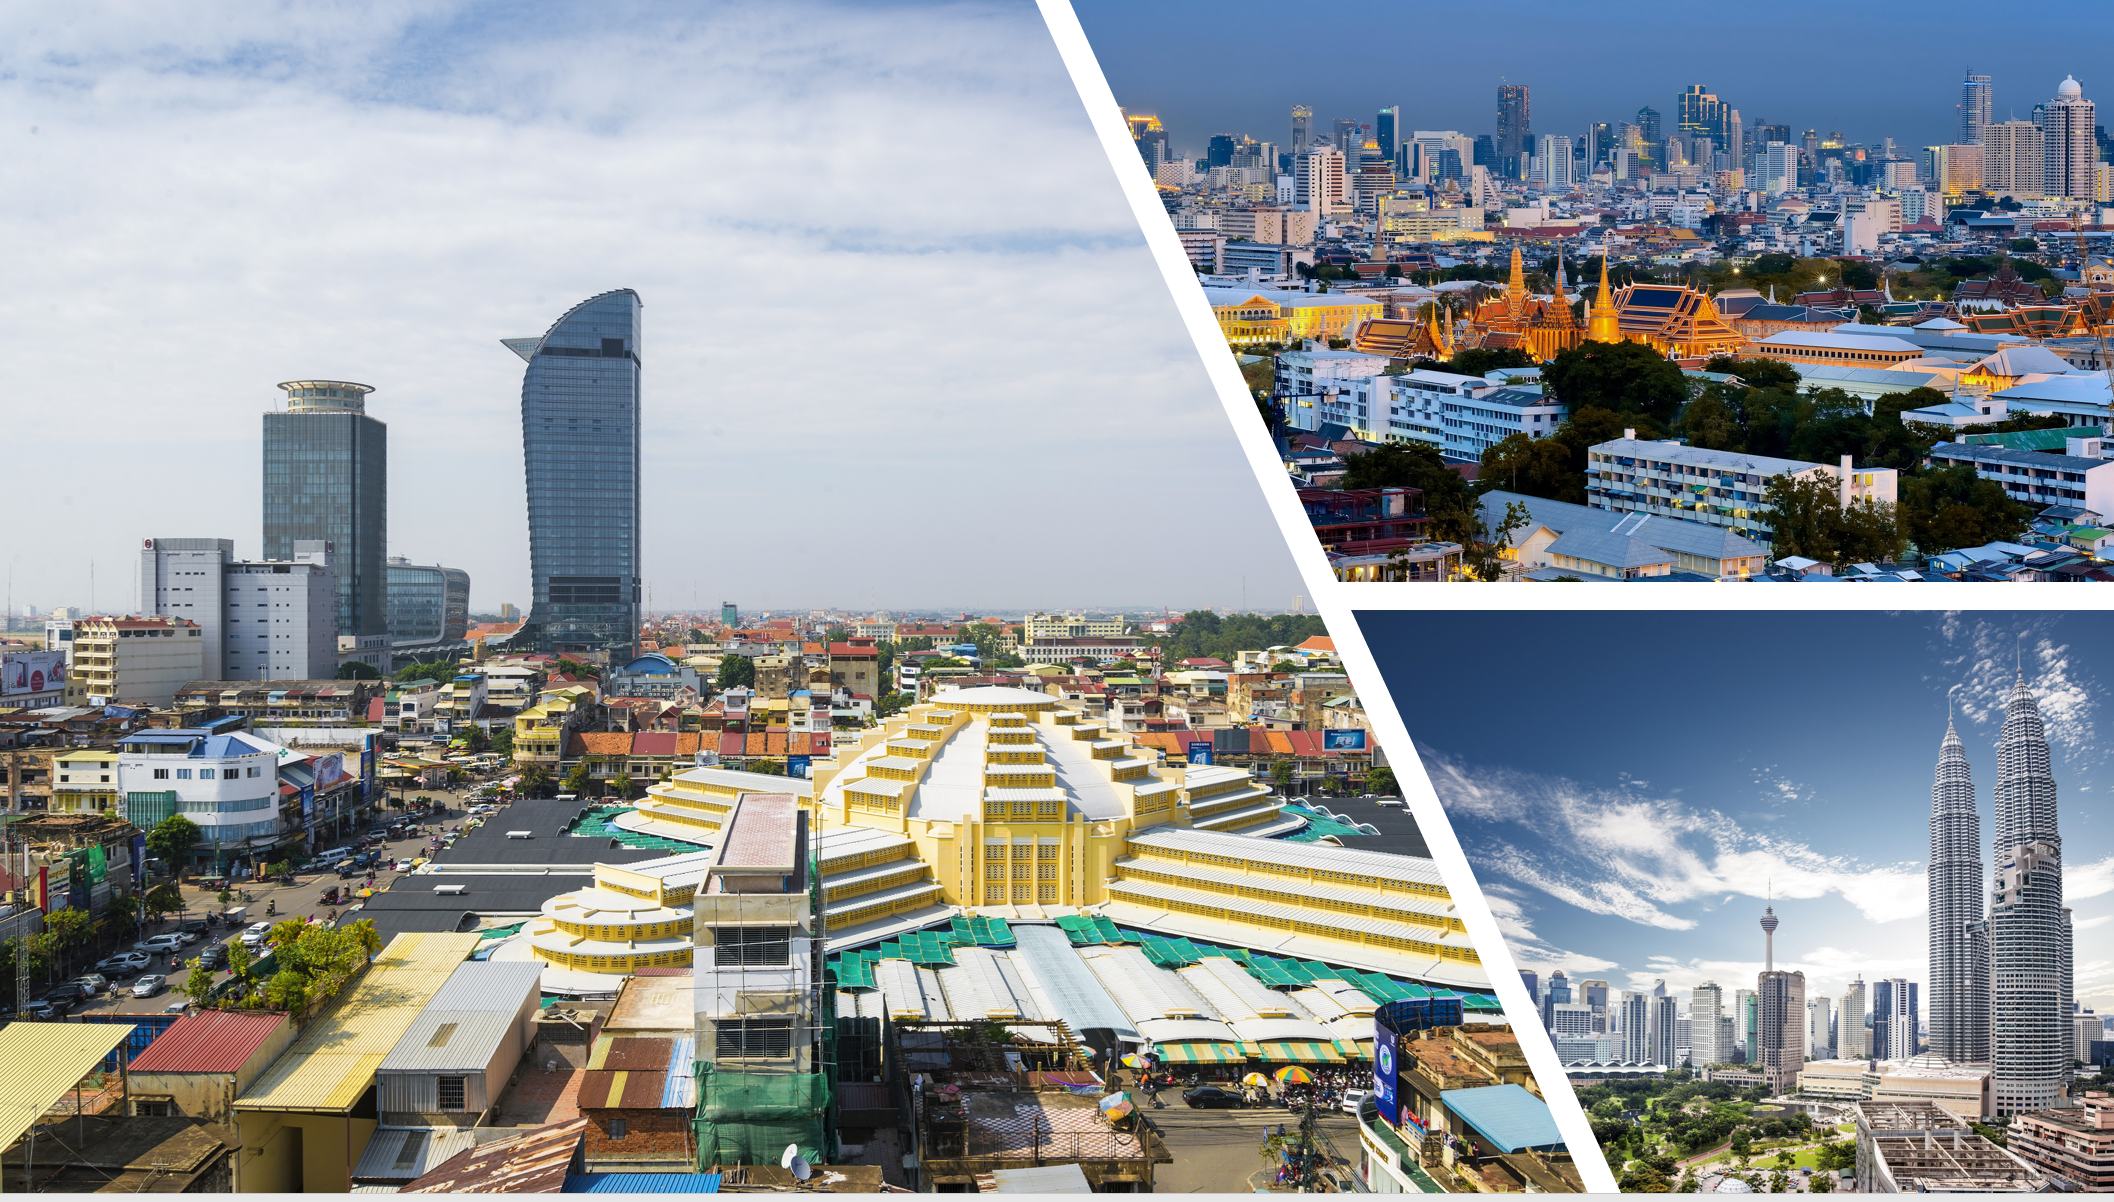 ビヨンドボーダーズの主要投資国マレーシア・カンボジア・タイ・モンゴル